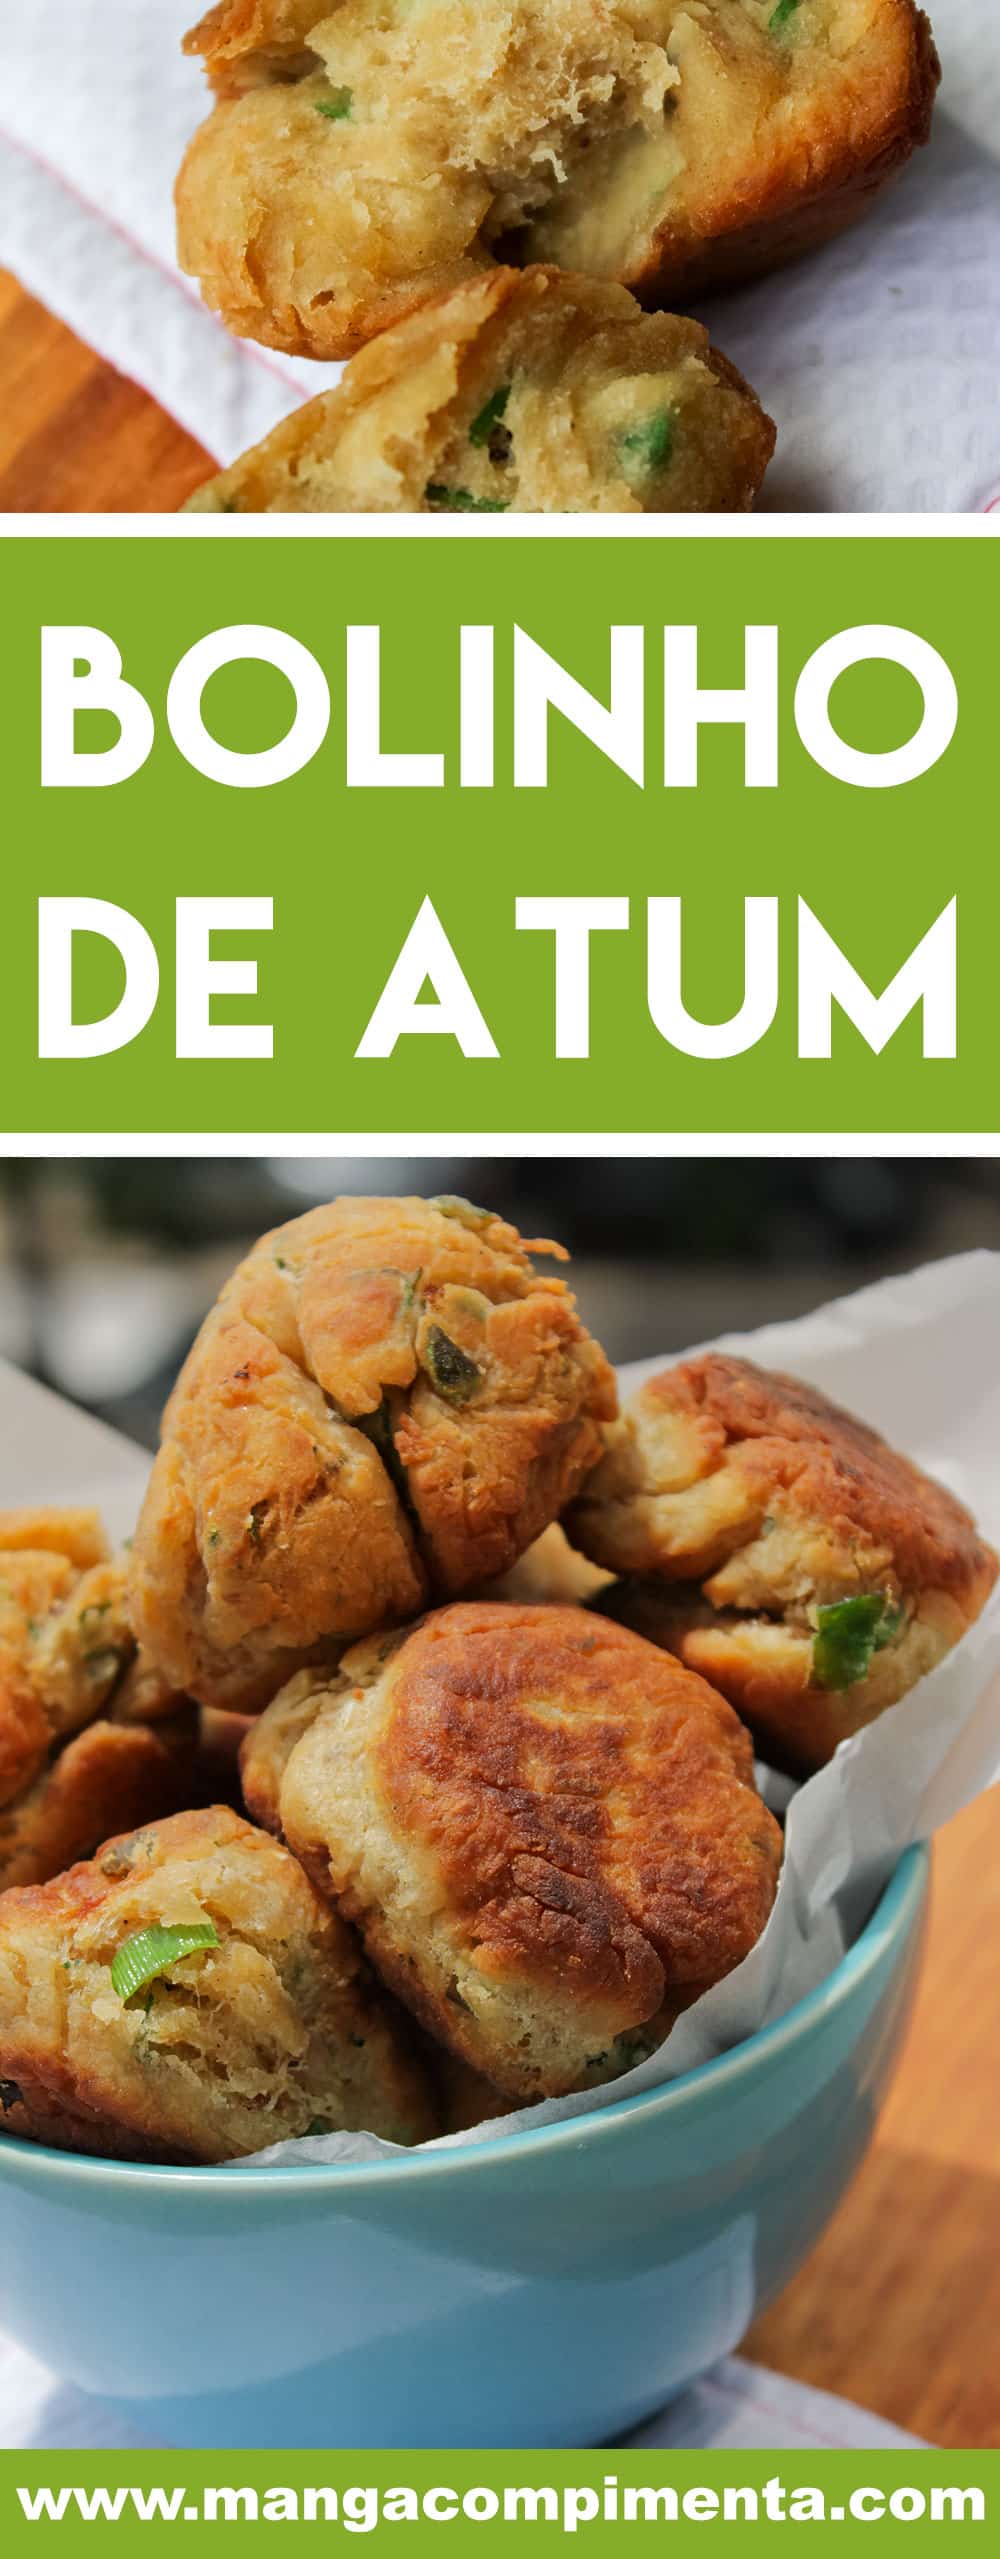 Receita de Bolinho de Atum - prepare um delicioso petisco ou sirva no almoço com saladinha verde.